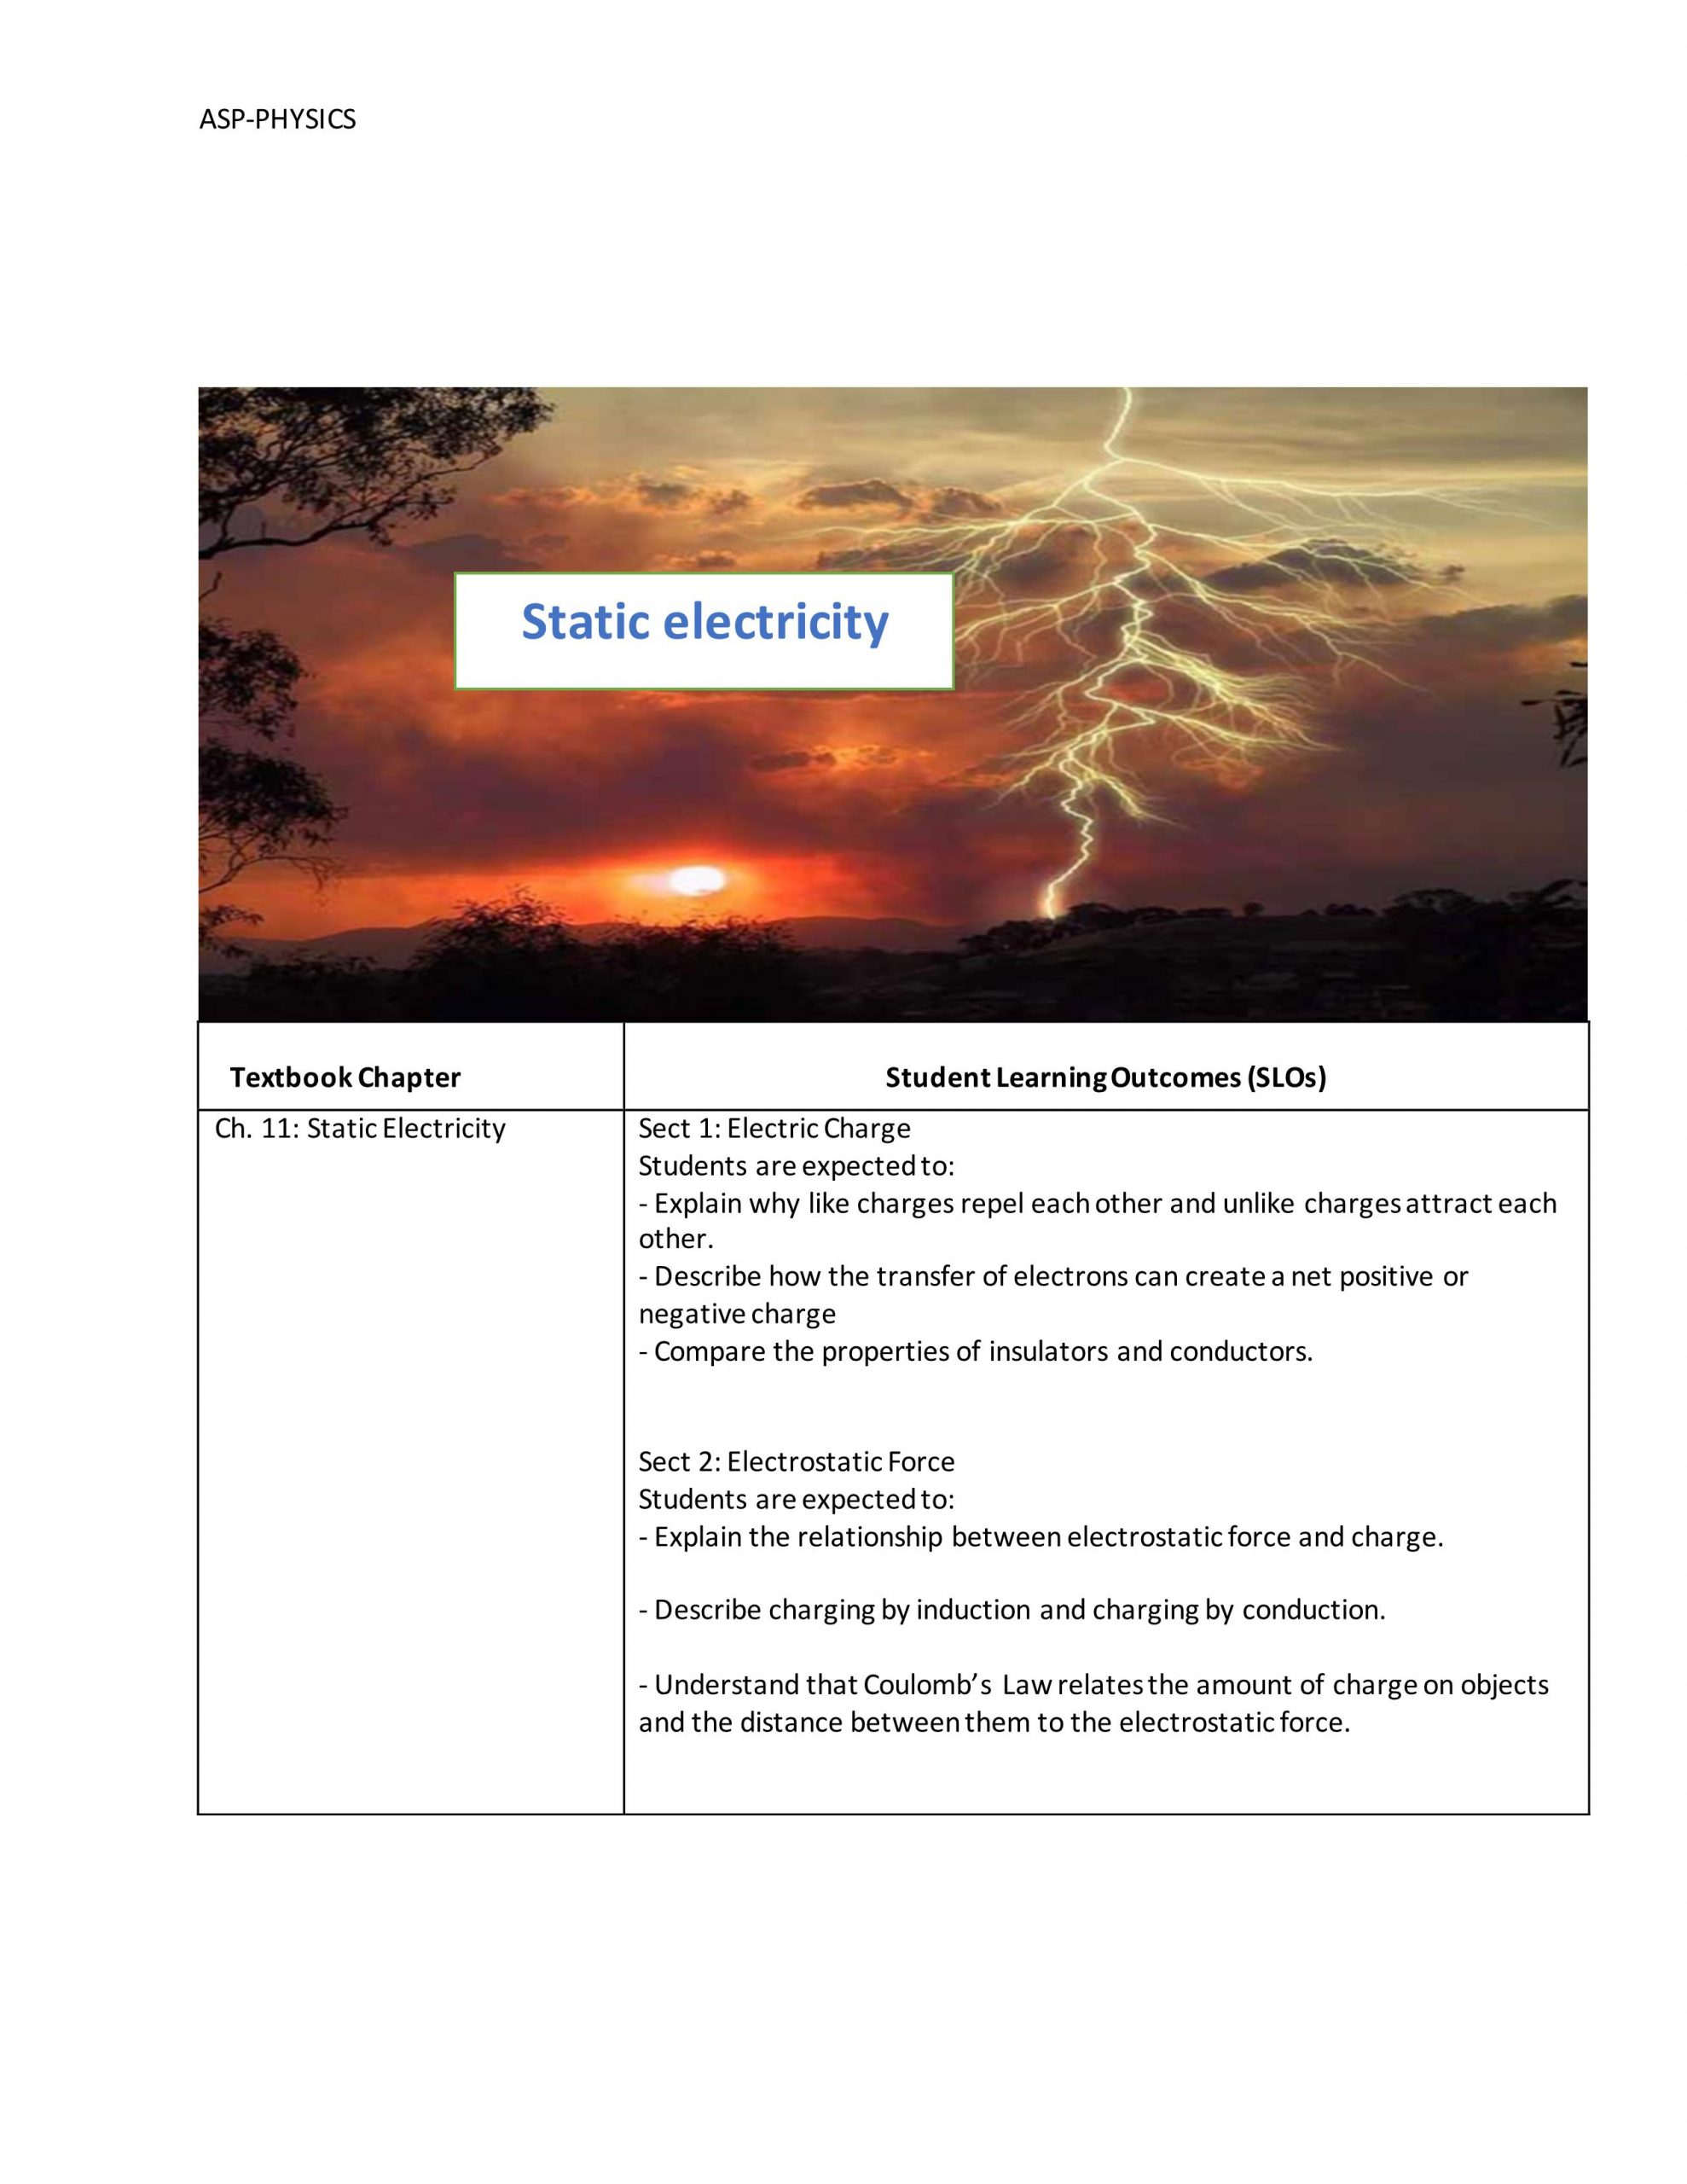 ملخص Static electricity بالانجليزي الصف العاشر مادة الفيزياء